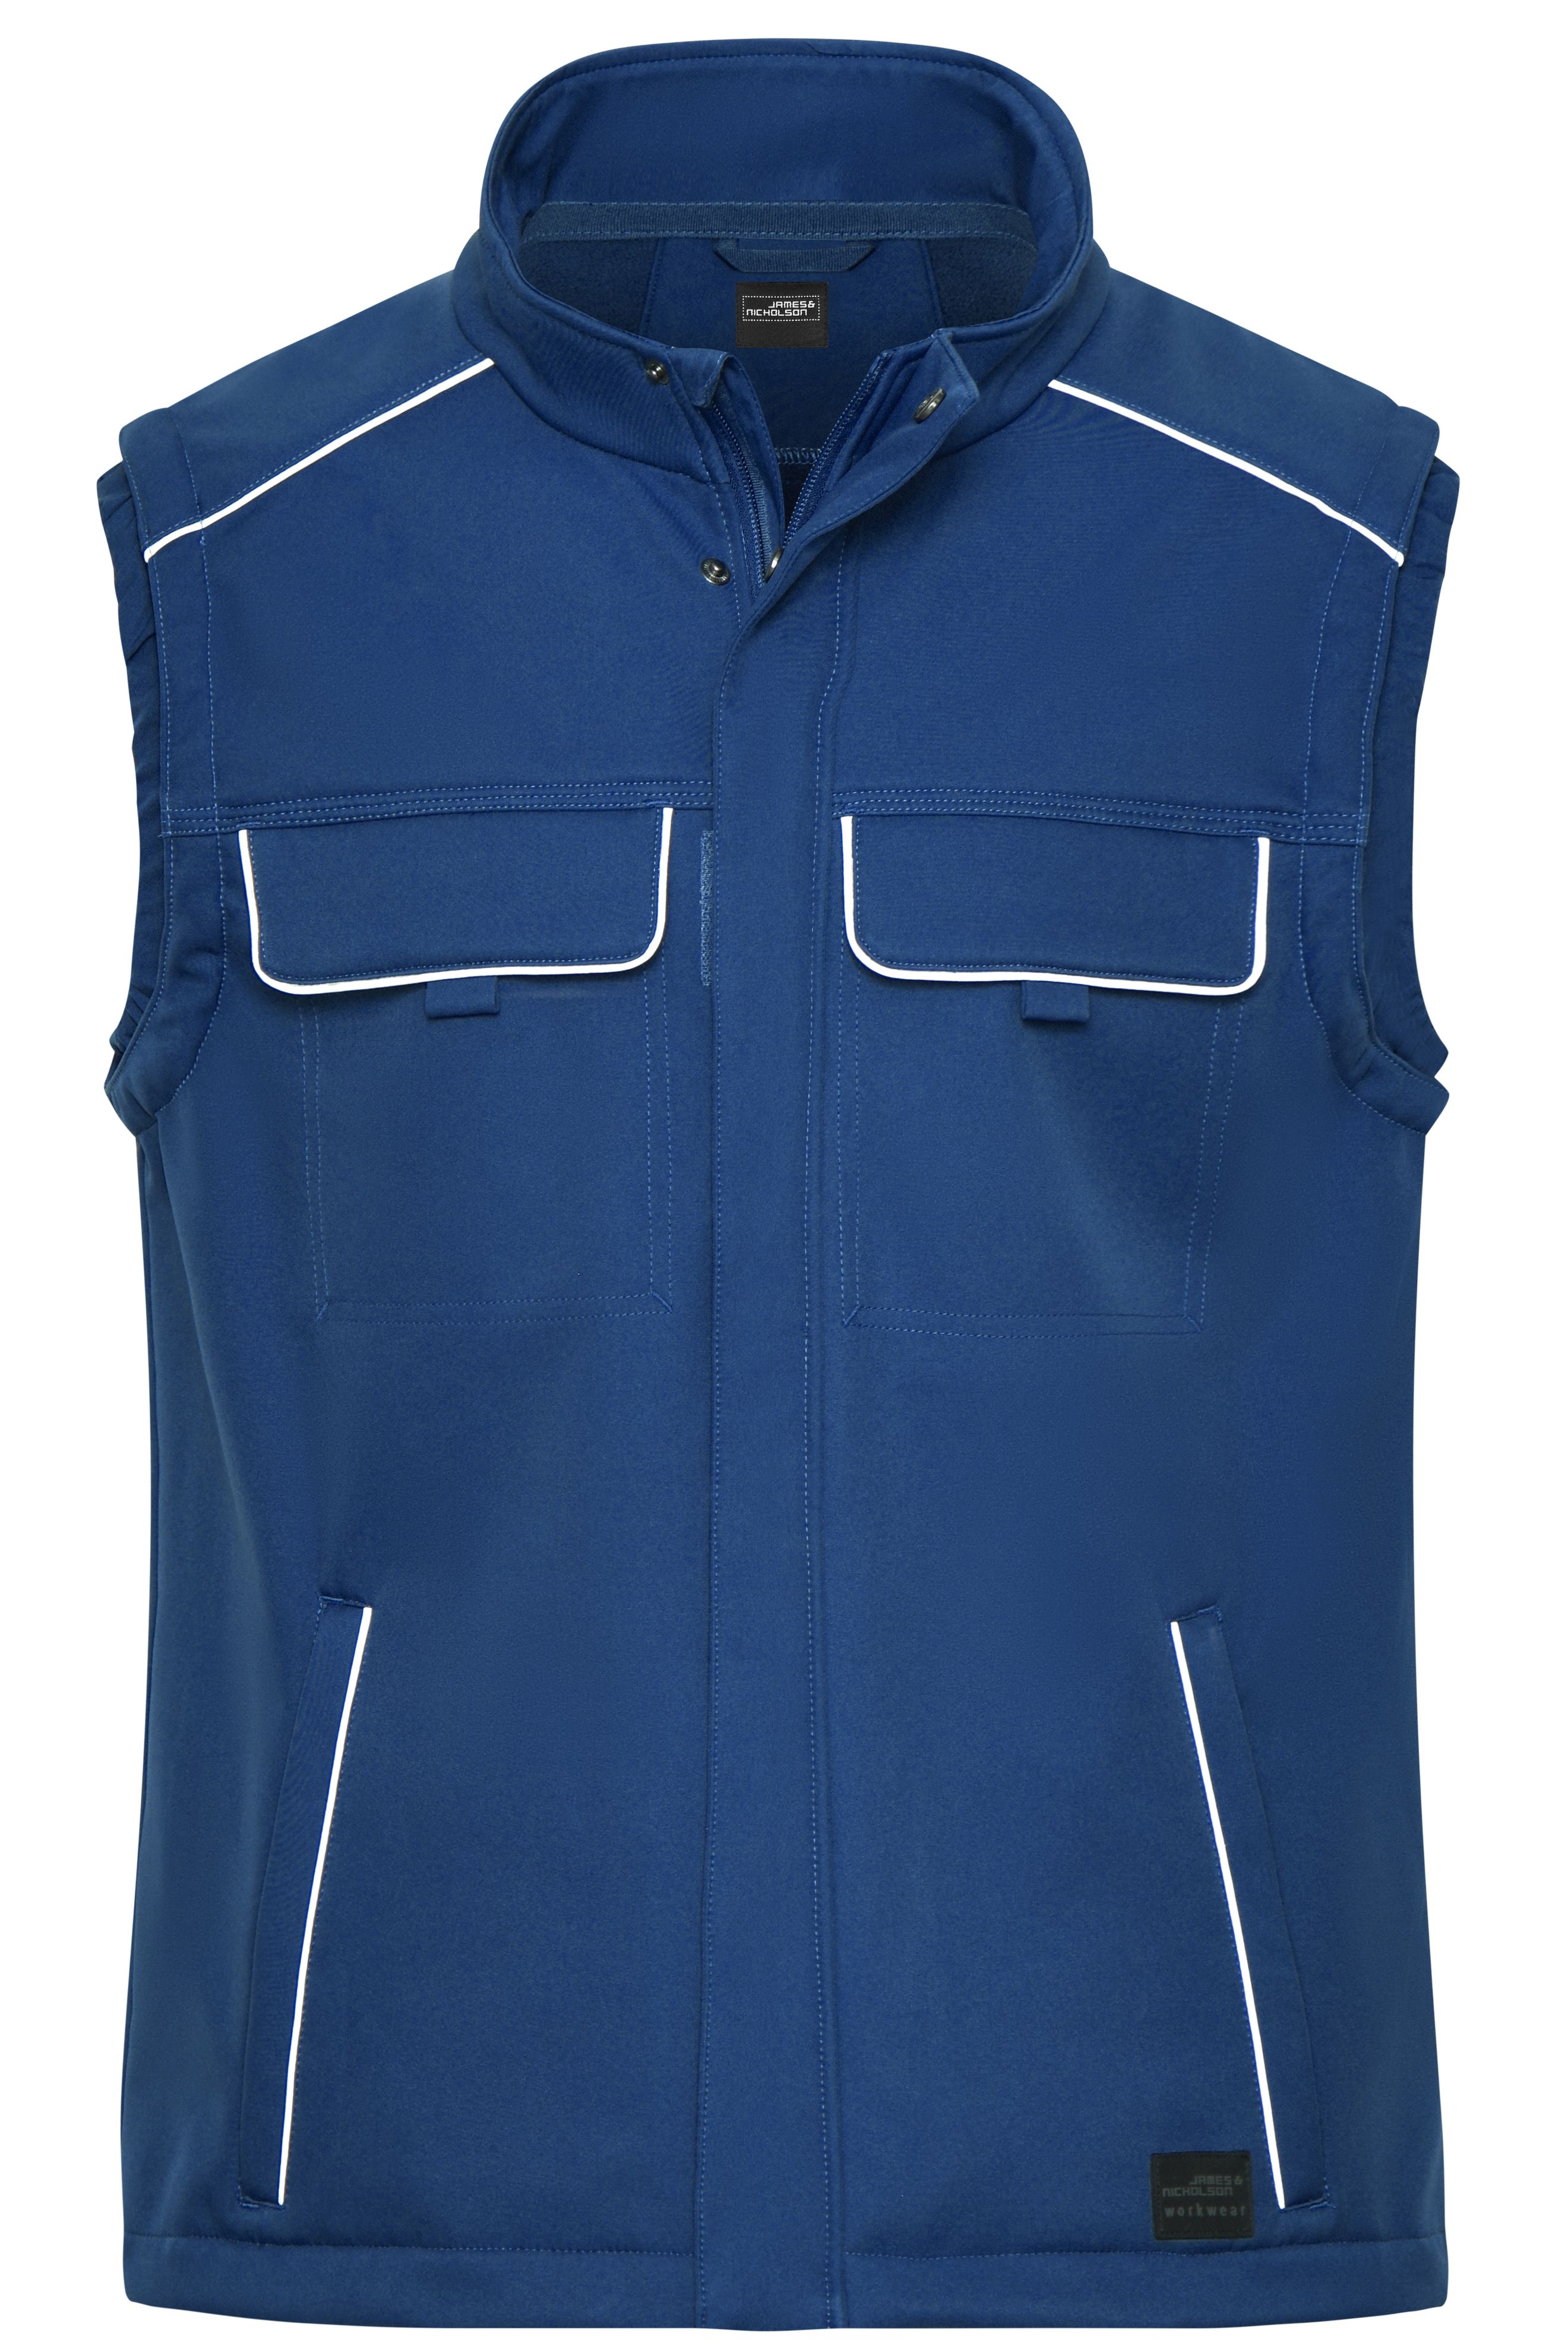 Workwear Softshell Vest - SOLID - JN883 Professionelle Softshellweste im cleanen Look mit hochwertigen Details